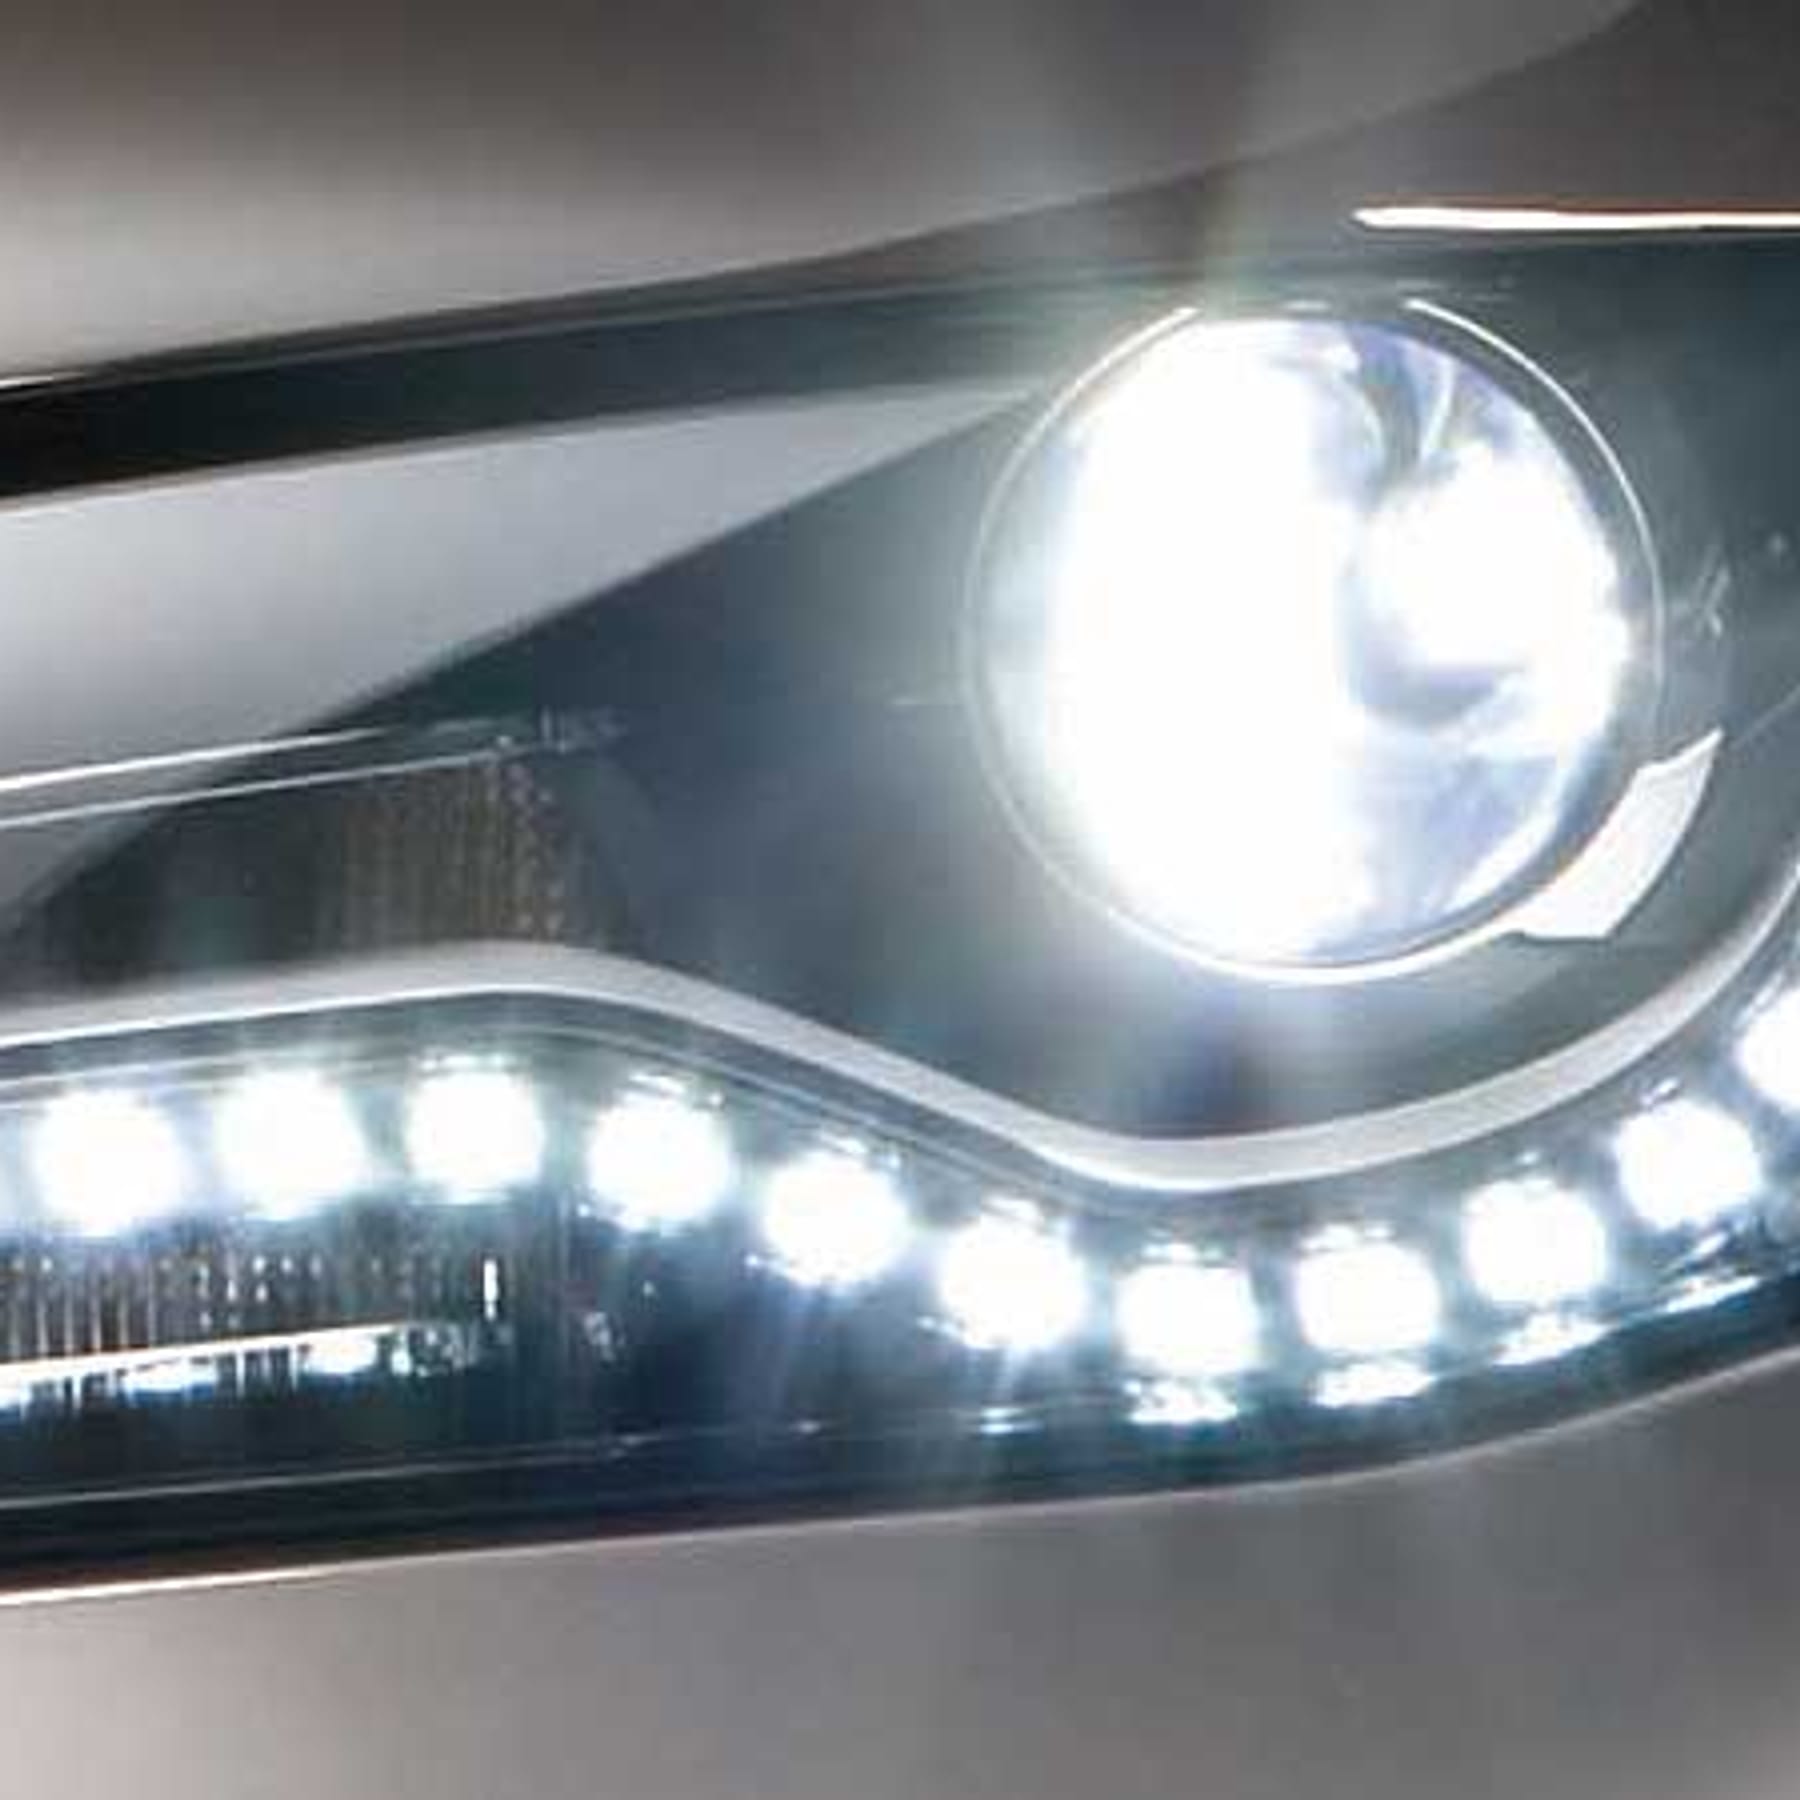 LED am Auto können bei Defekt schnell teuer werden